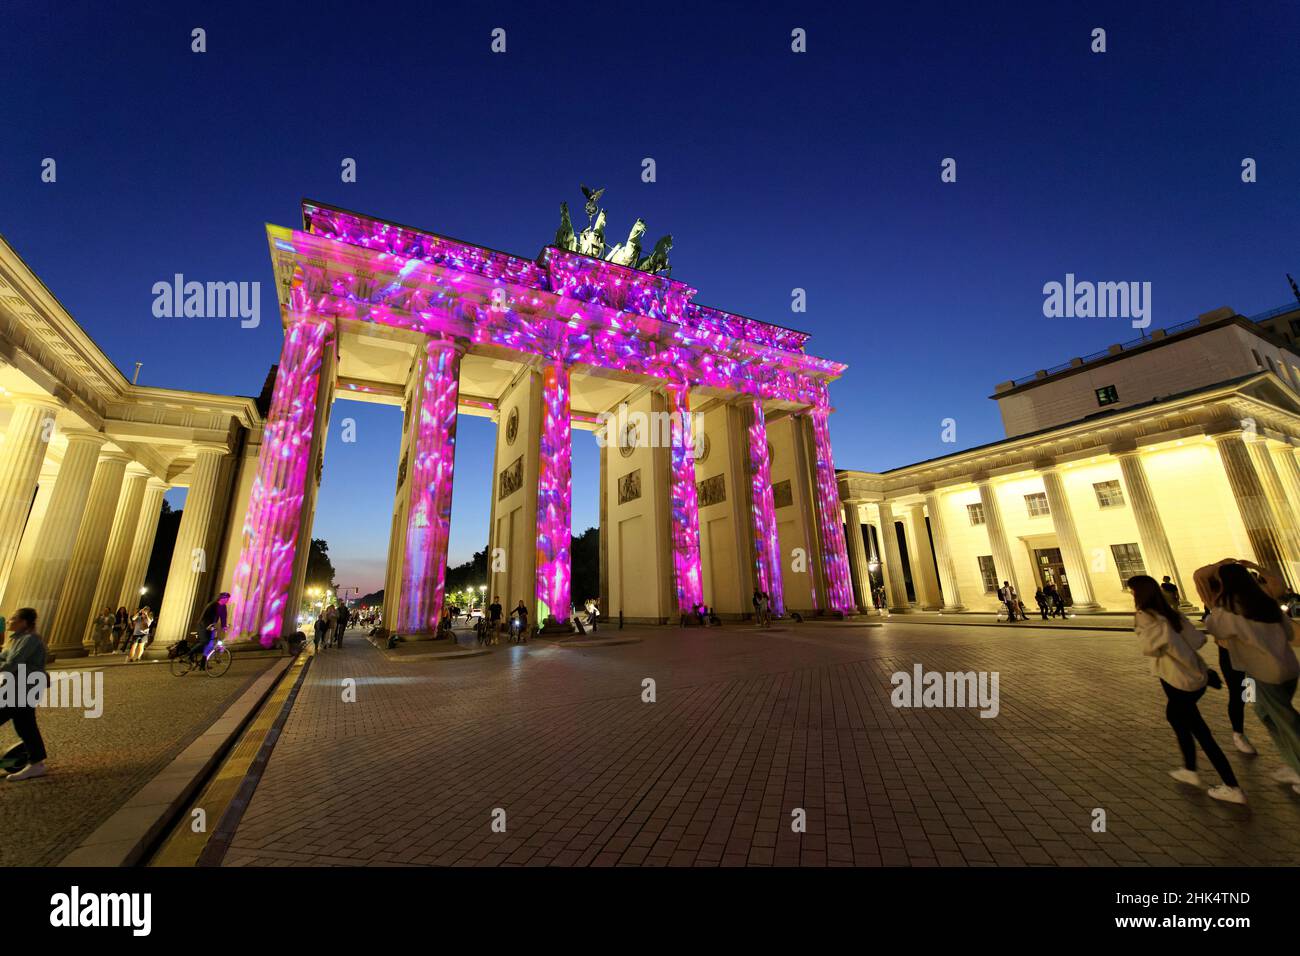 Porta di Brandeburgo durante il Festival delle luci, Piazza Pariser, Unter den Linden, Berlino, Germania, Europa Foto Stock